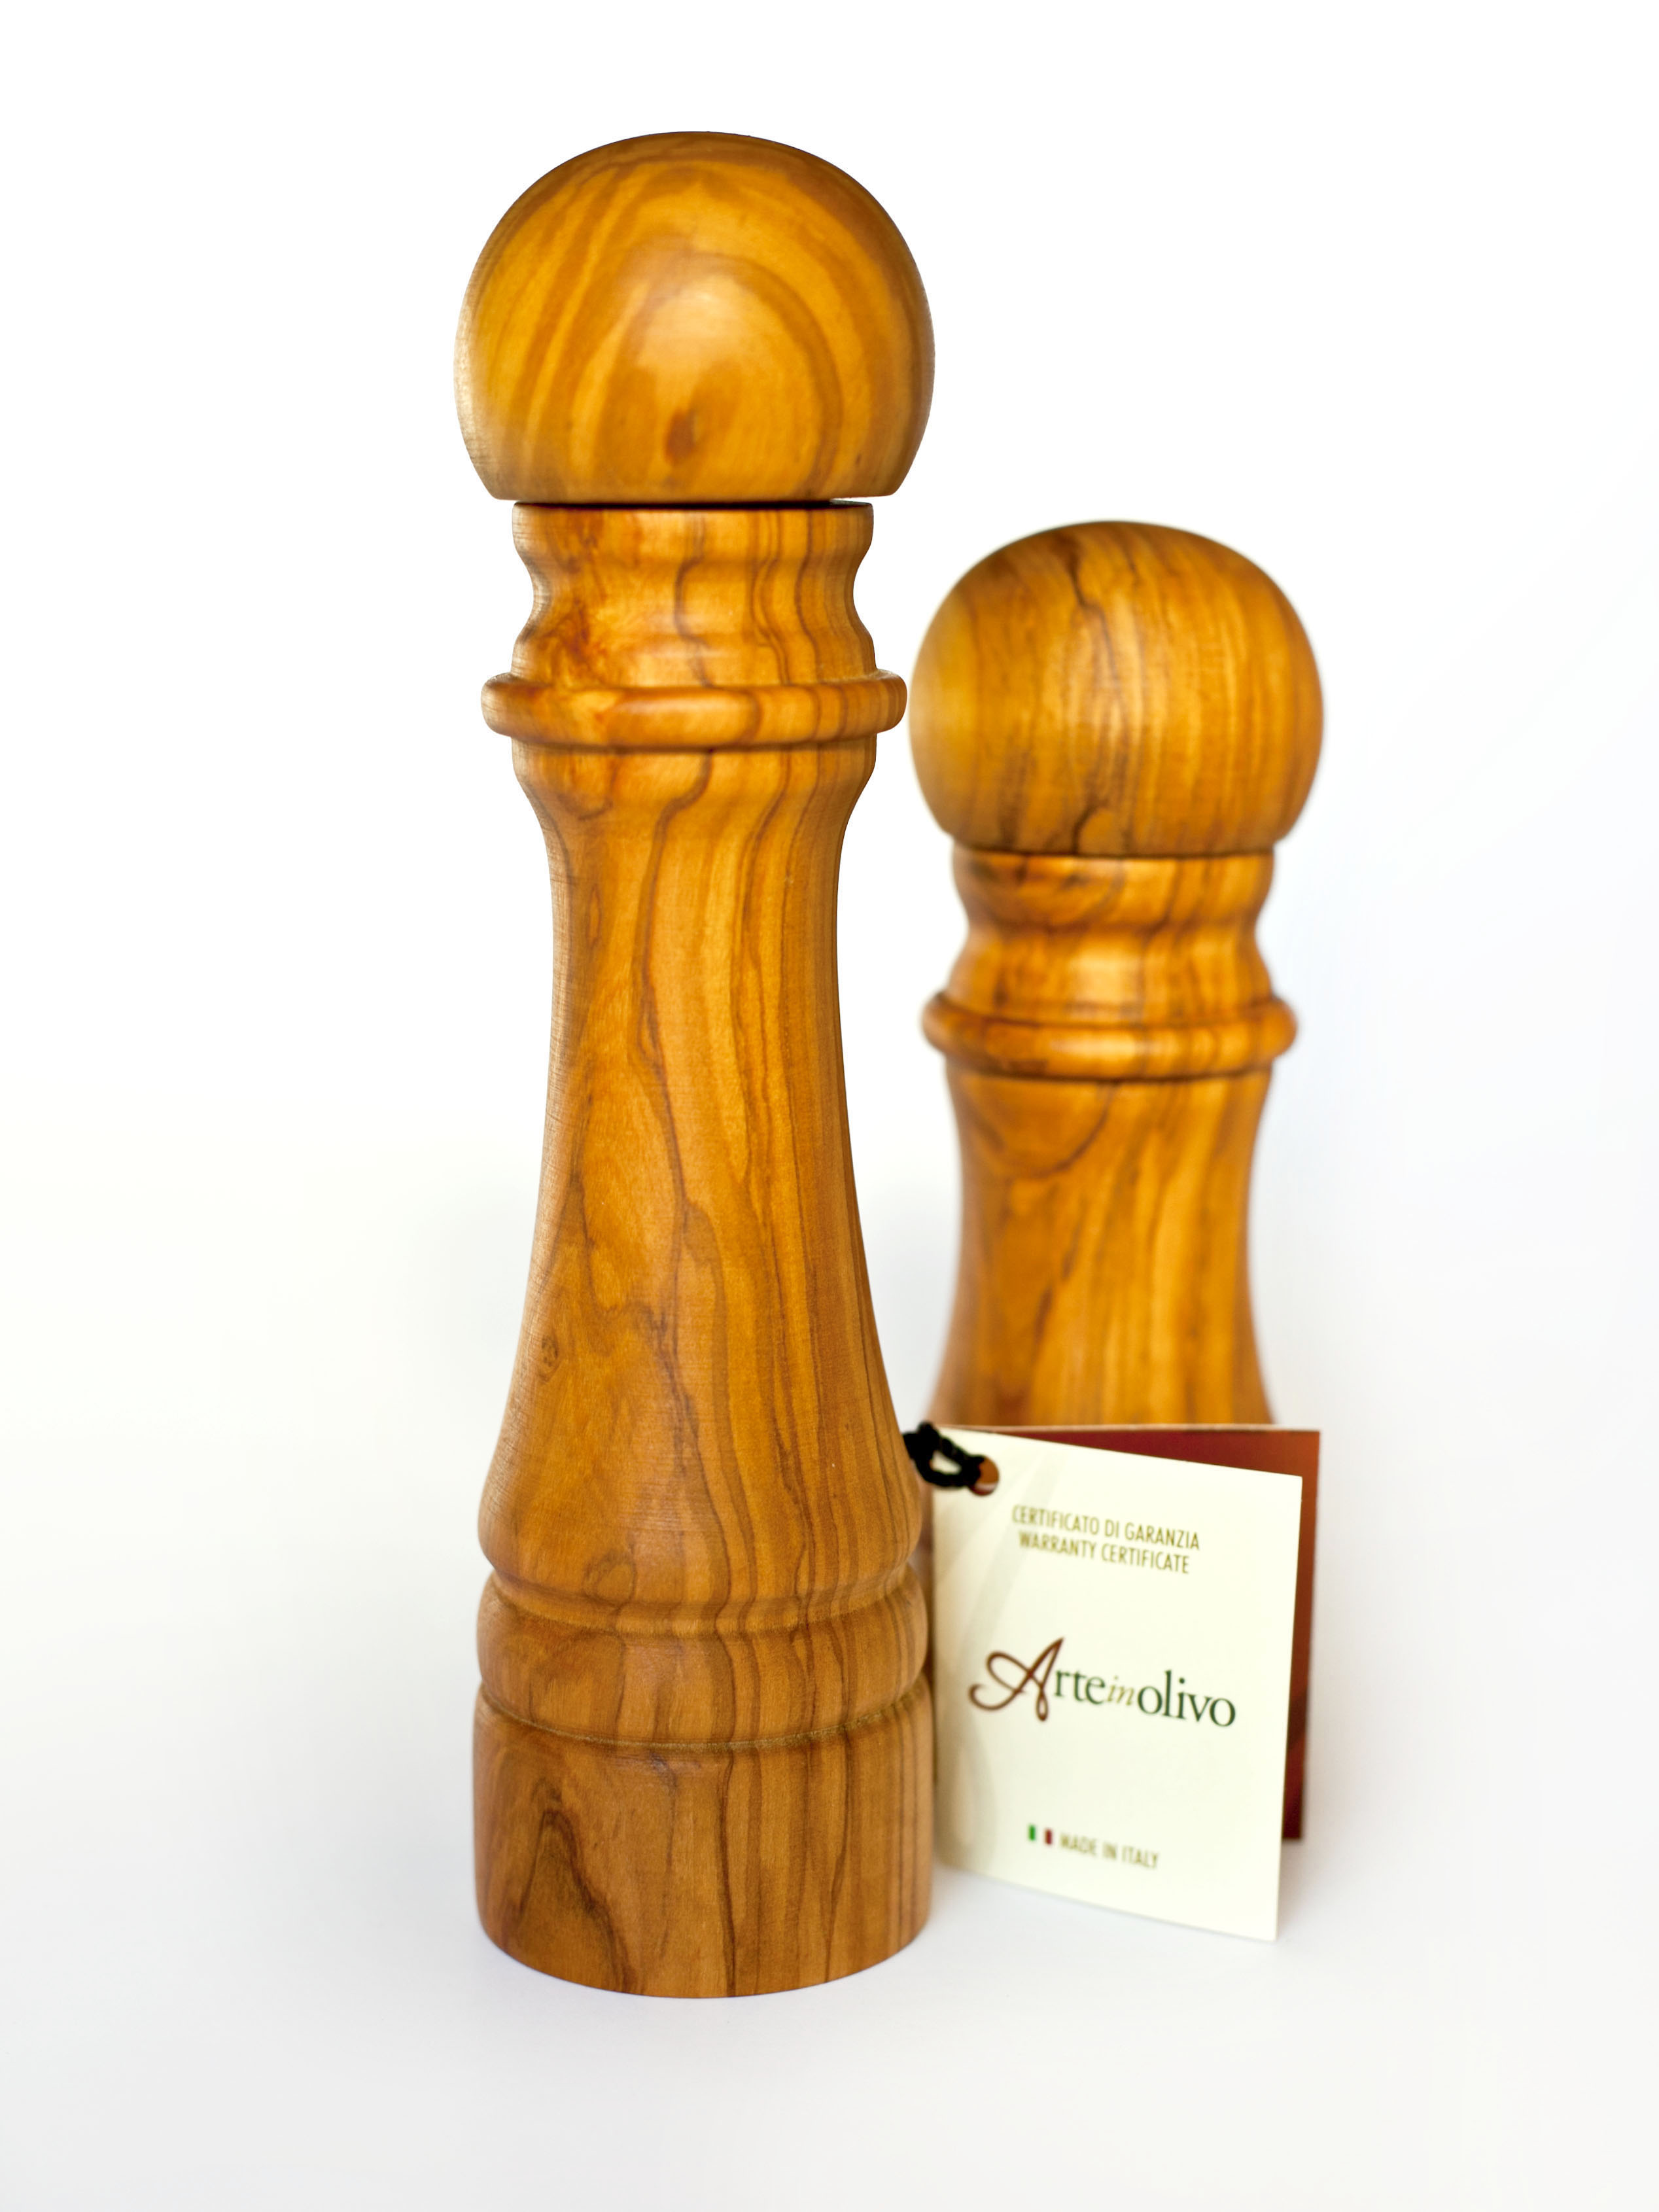 Macinapepe tradizionale in legno di olivo